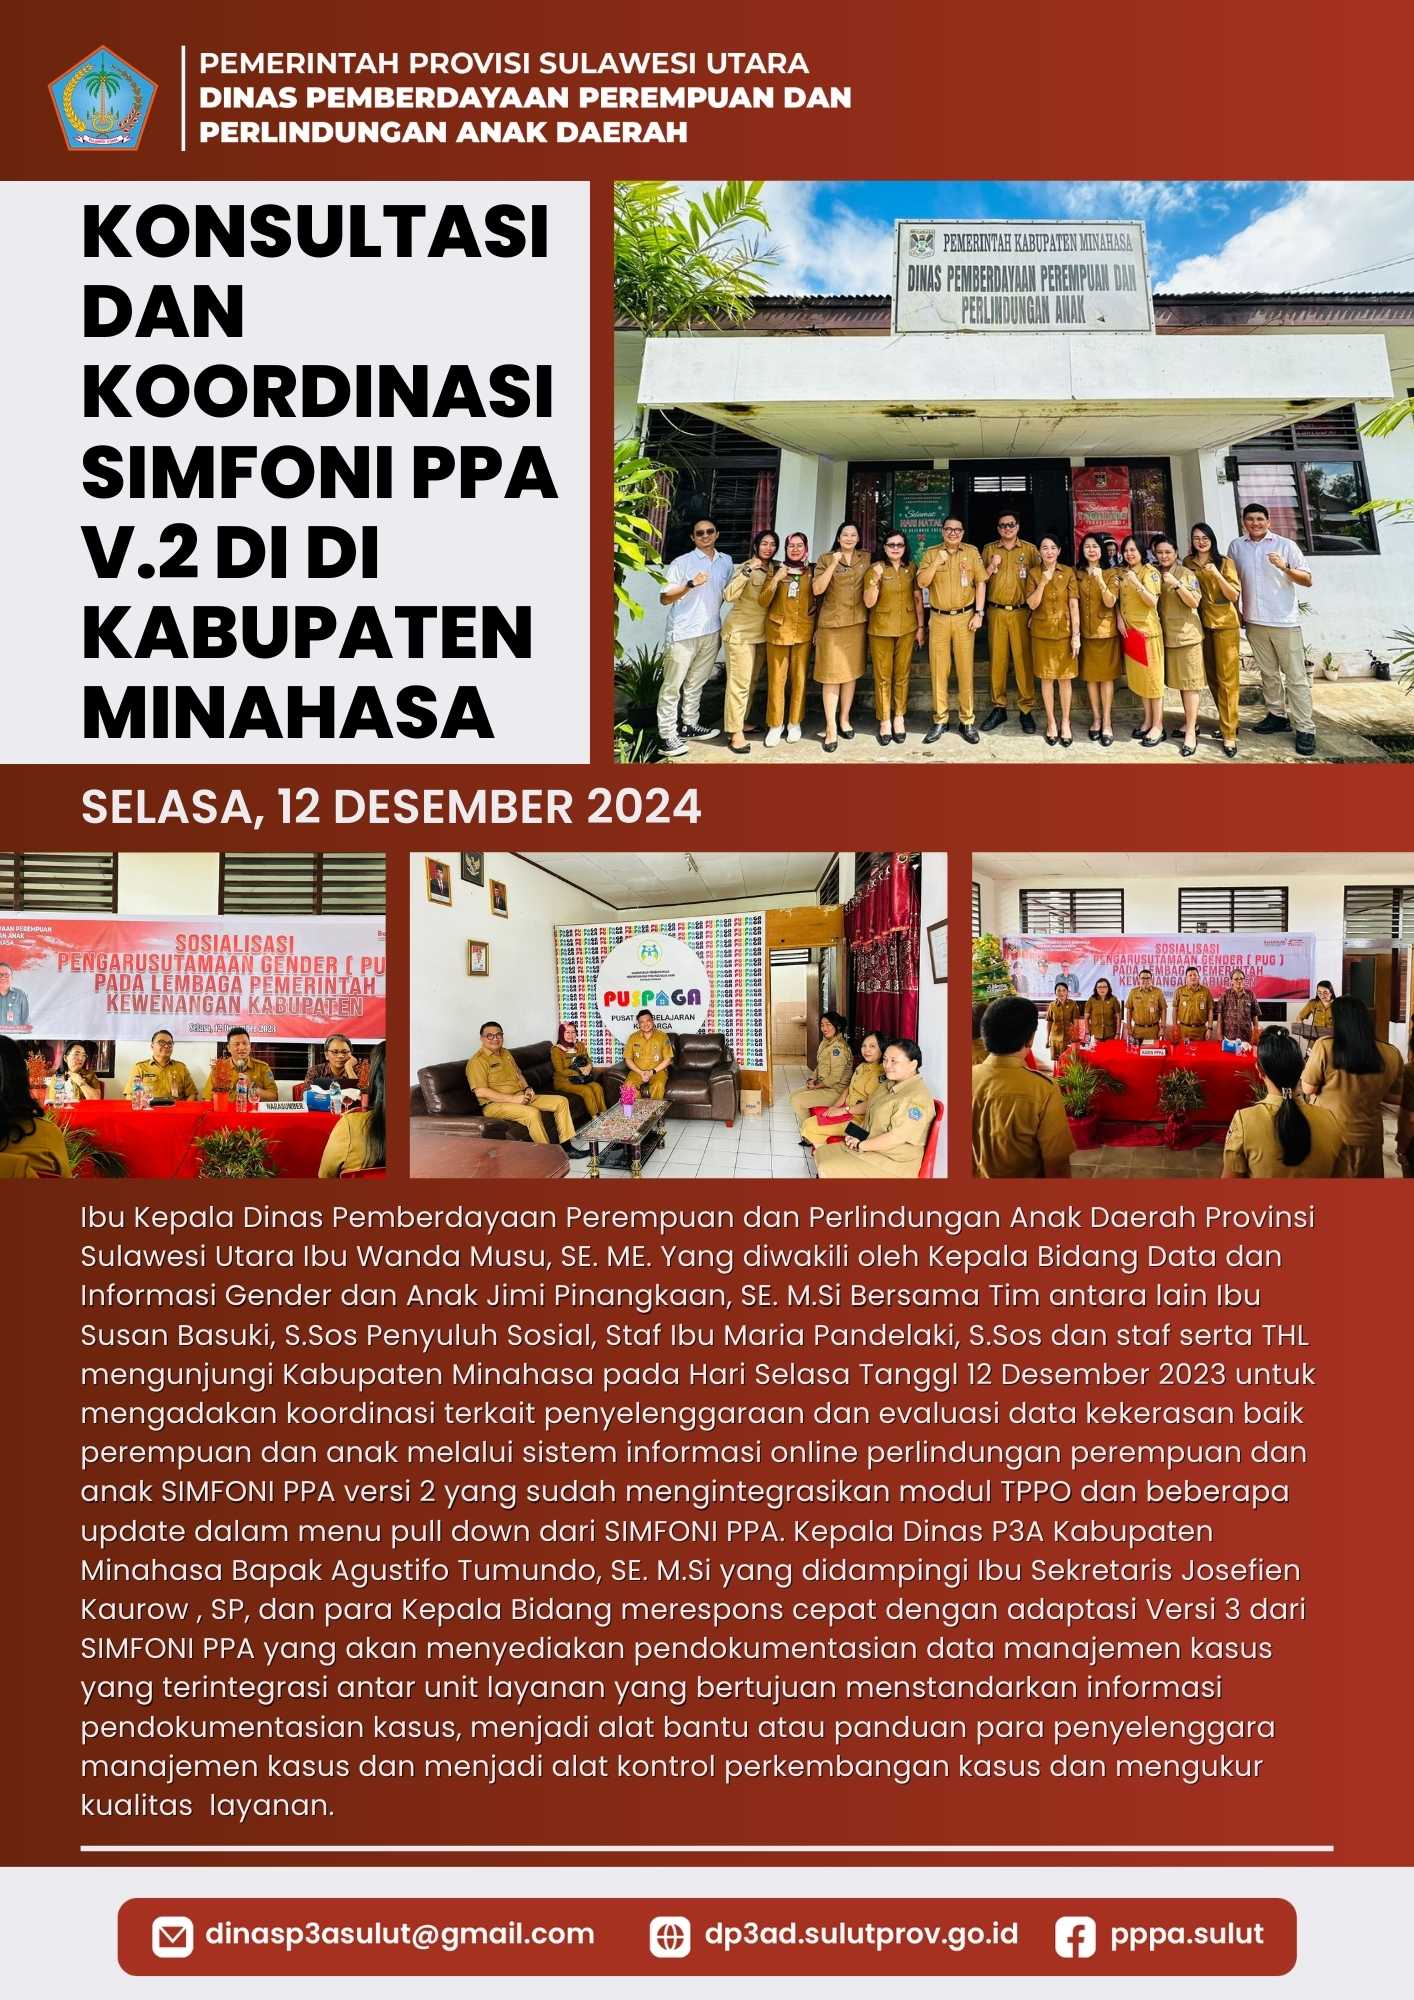 Festival Anak Sinode-Am dan Pertemuan Raya Guru-Guru Sekolah Minggu di GMIM  Kakaskasen Pniel, Dinas Pemberdayaan Perempuan dan Perlindungan Anak  Daerah Provinsi Sulawesi Utara